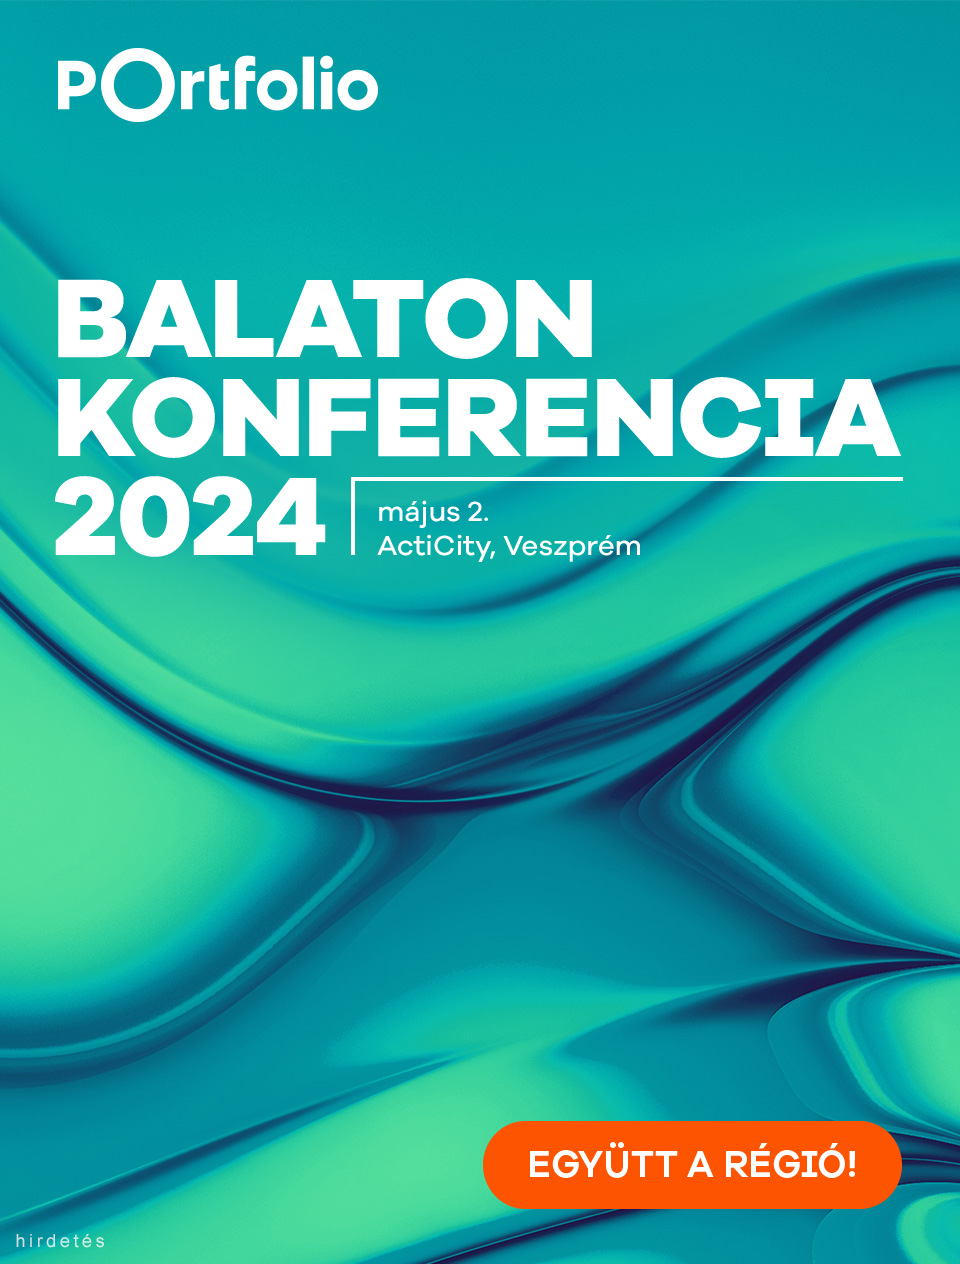 Balaton Konferencia 2024 adh 960x1264